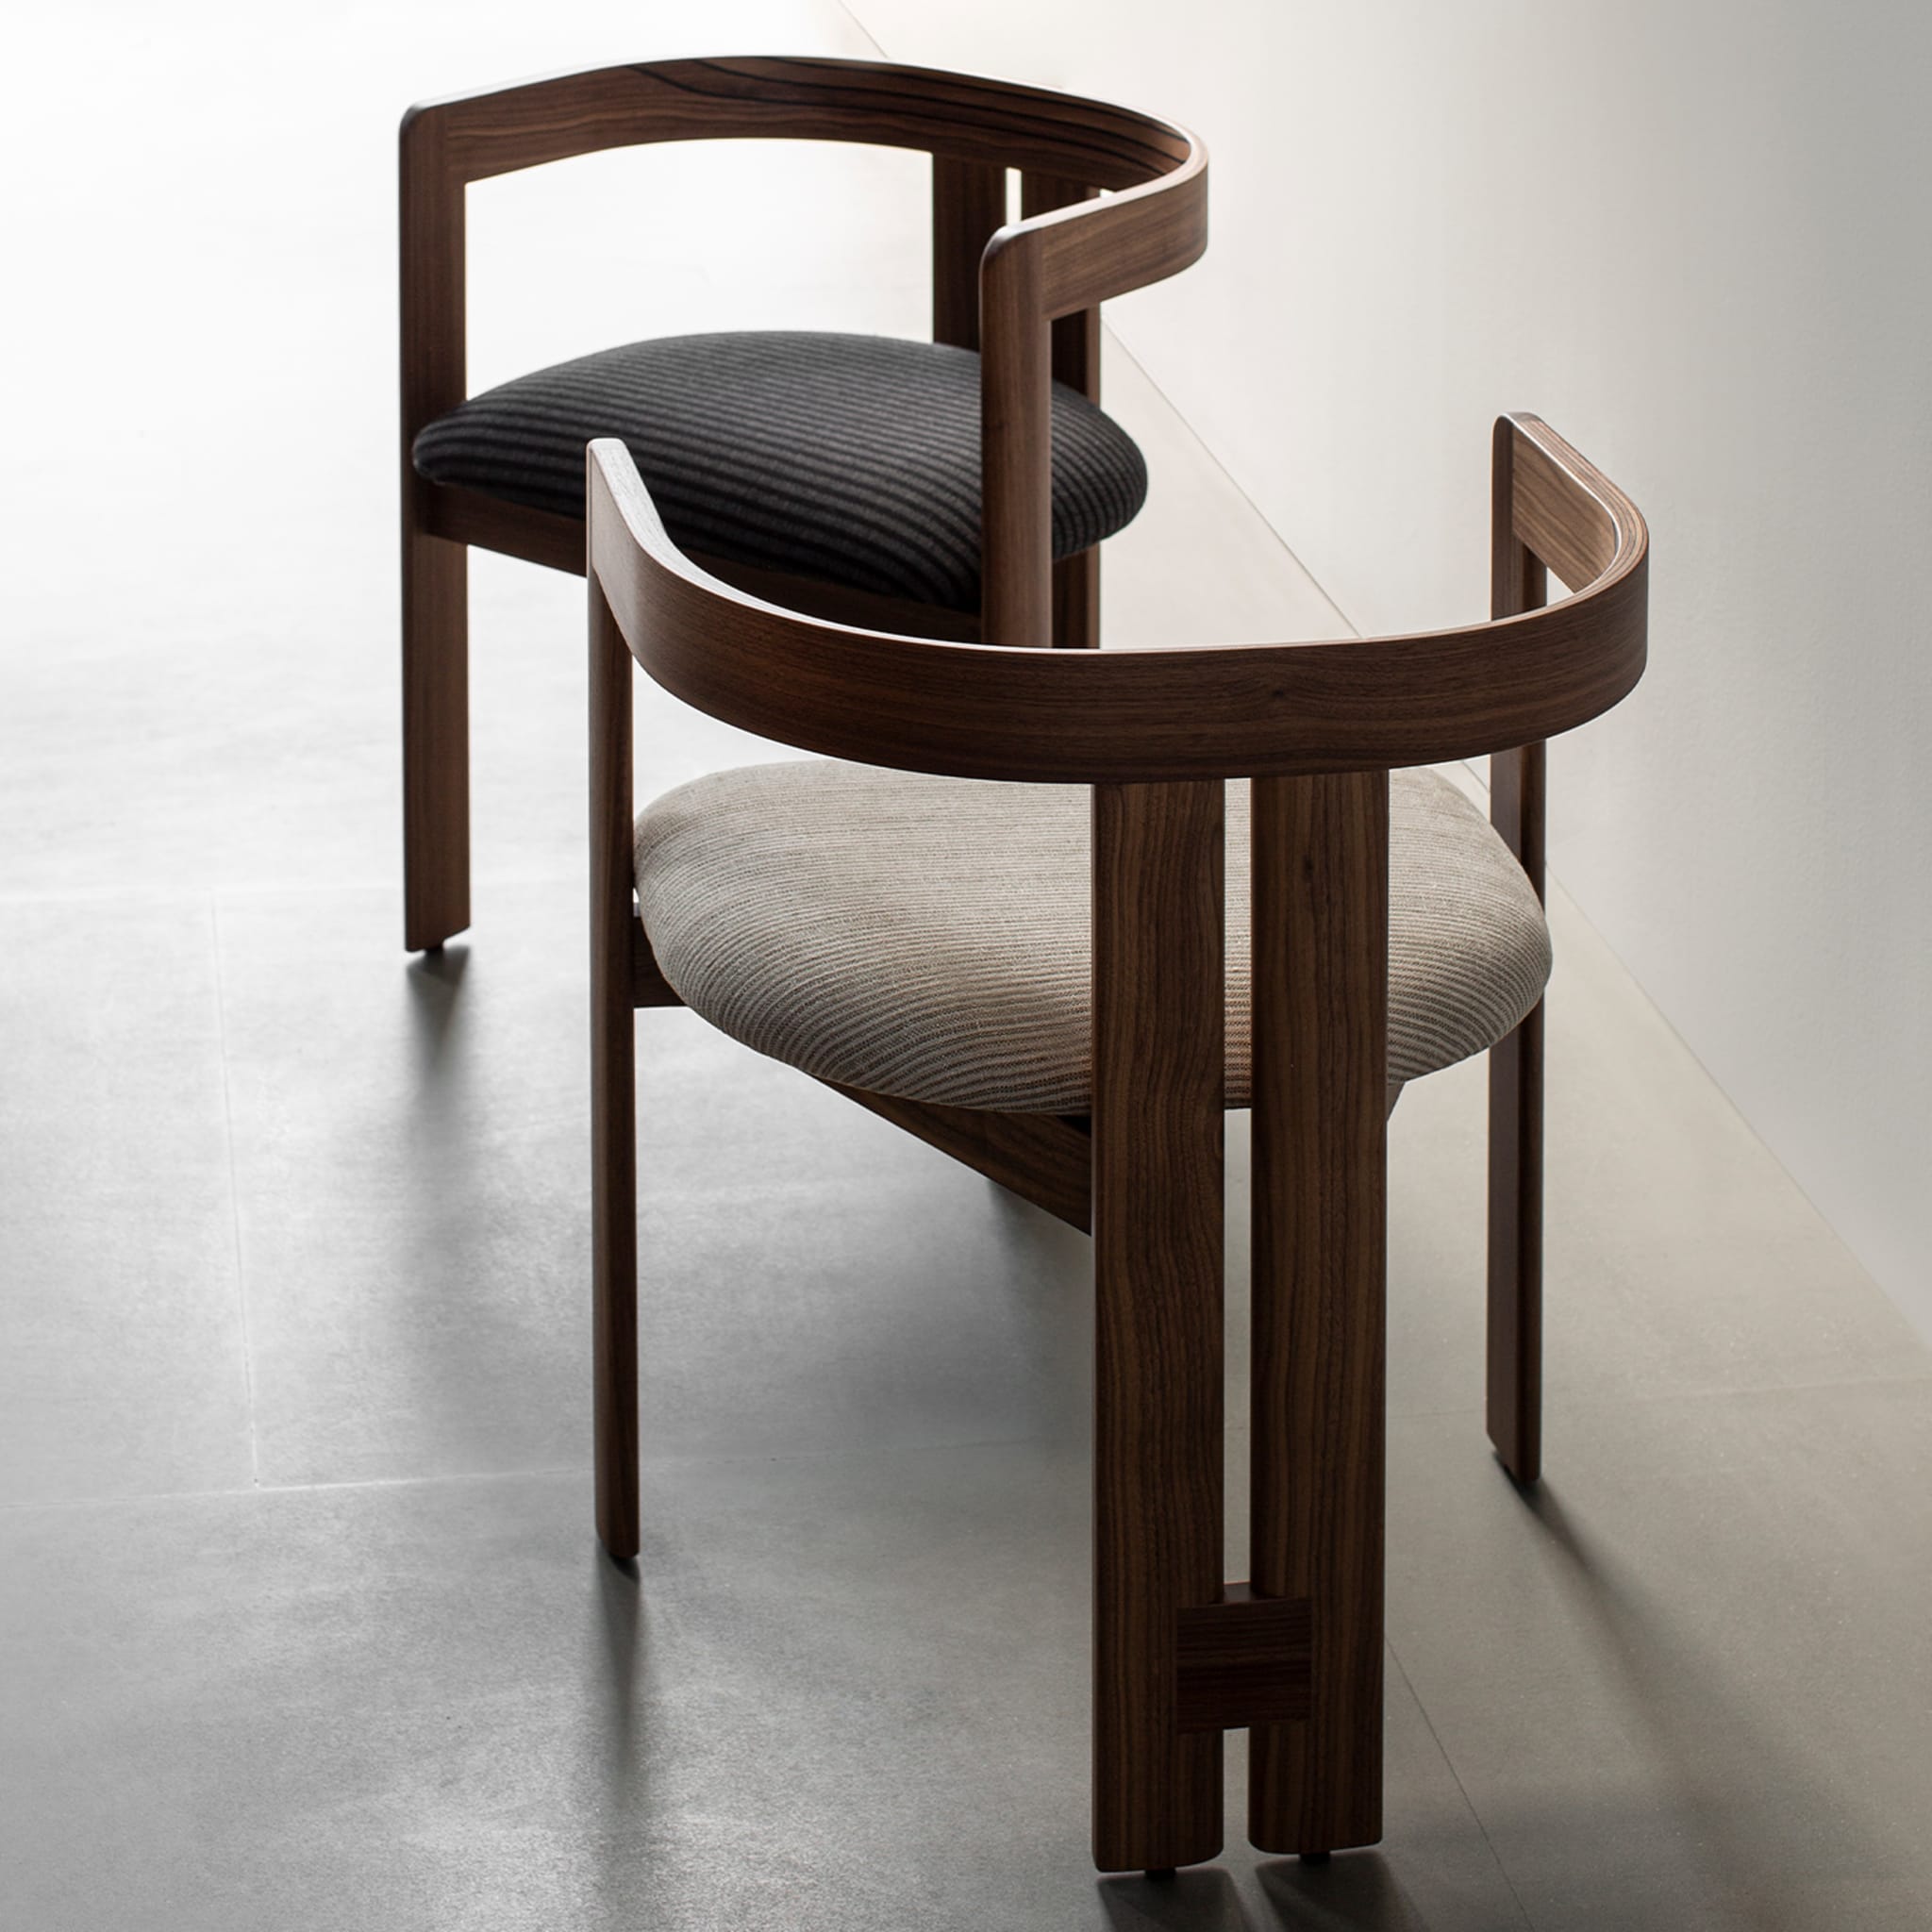 Pigreco Walnut Chair by Tobia Scarpa - Alternative view 2